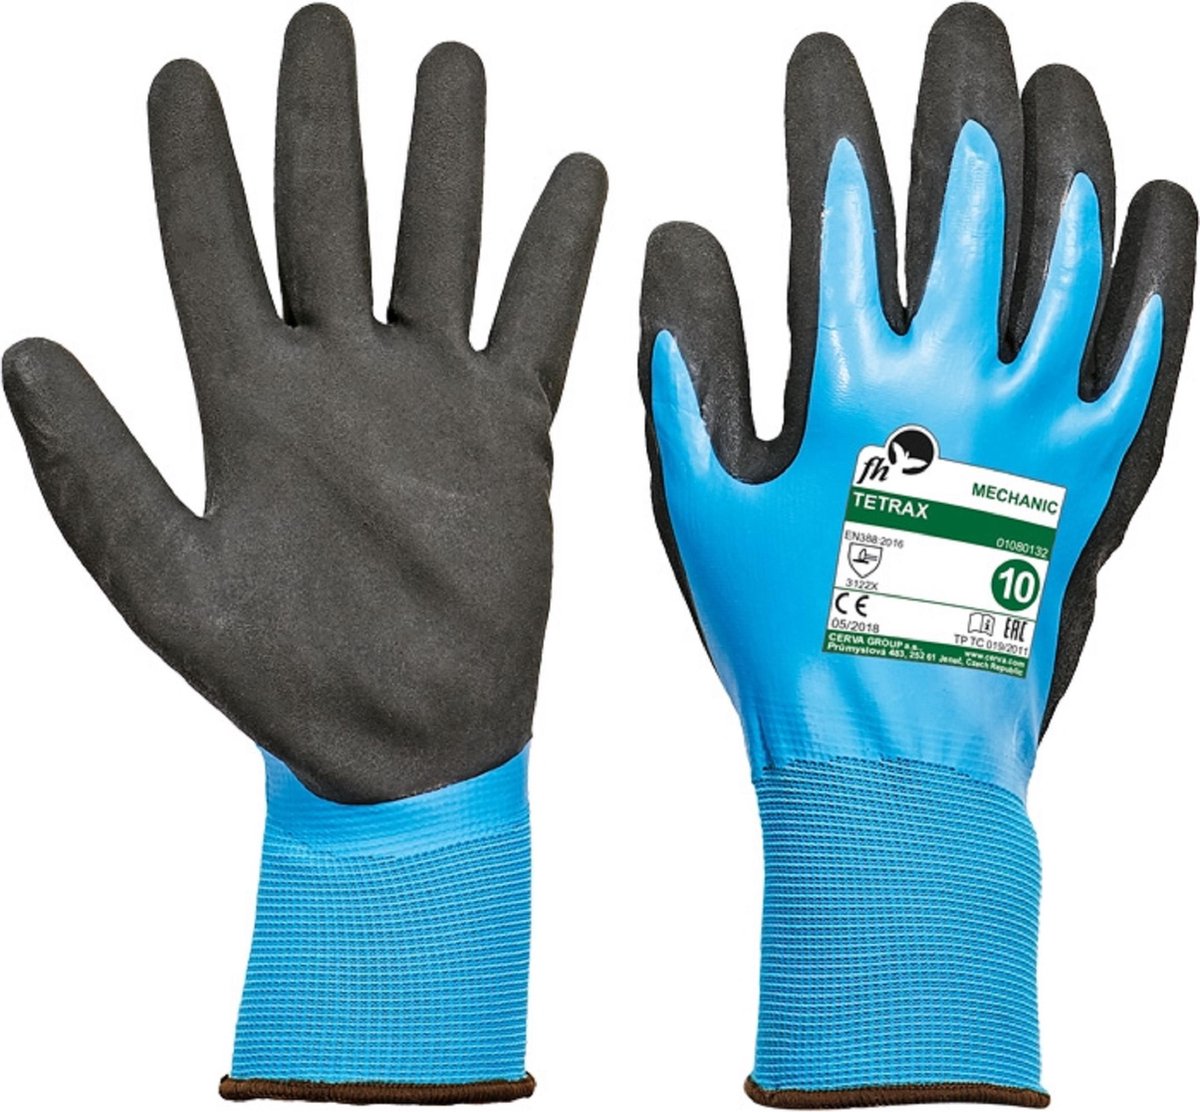 Vloeistofdichte handschoen met grip Tetrax maat 9 - 6 paar